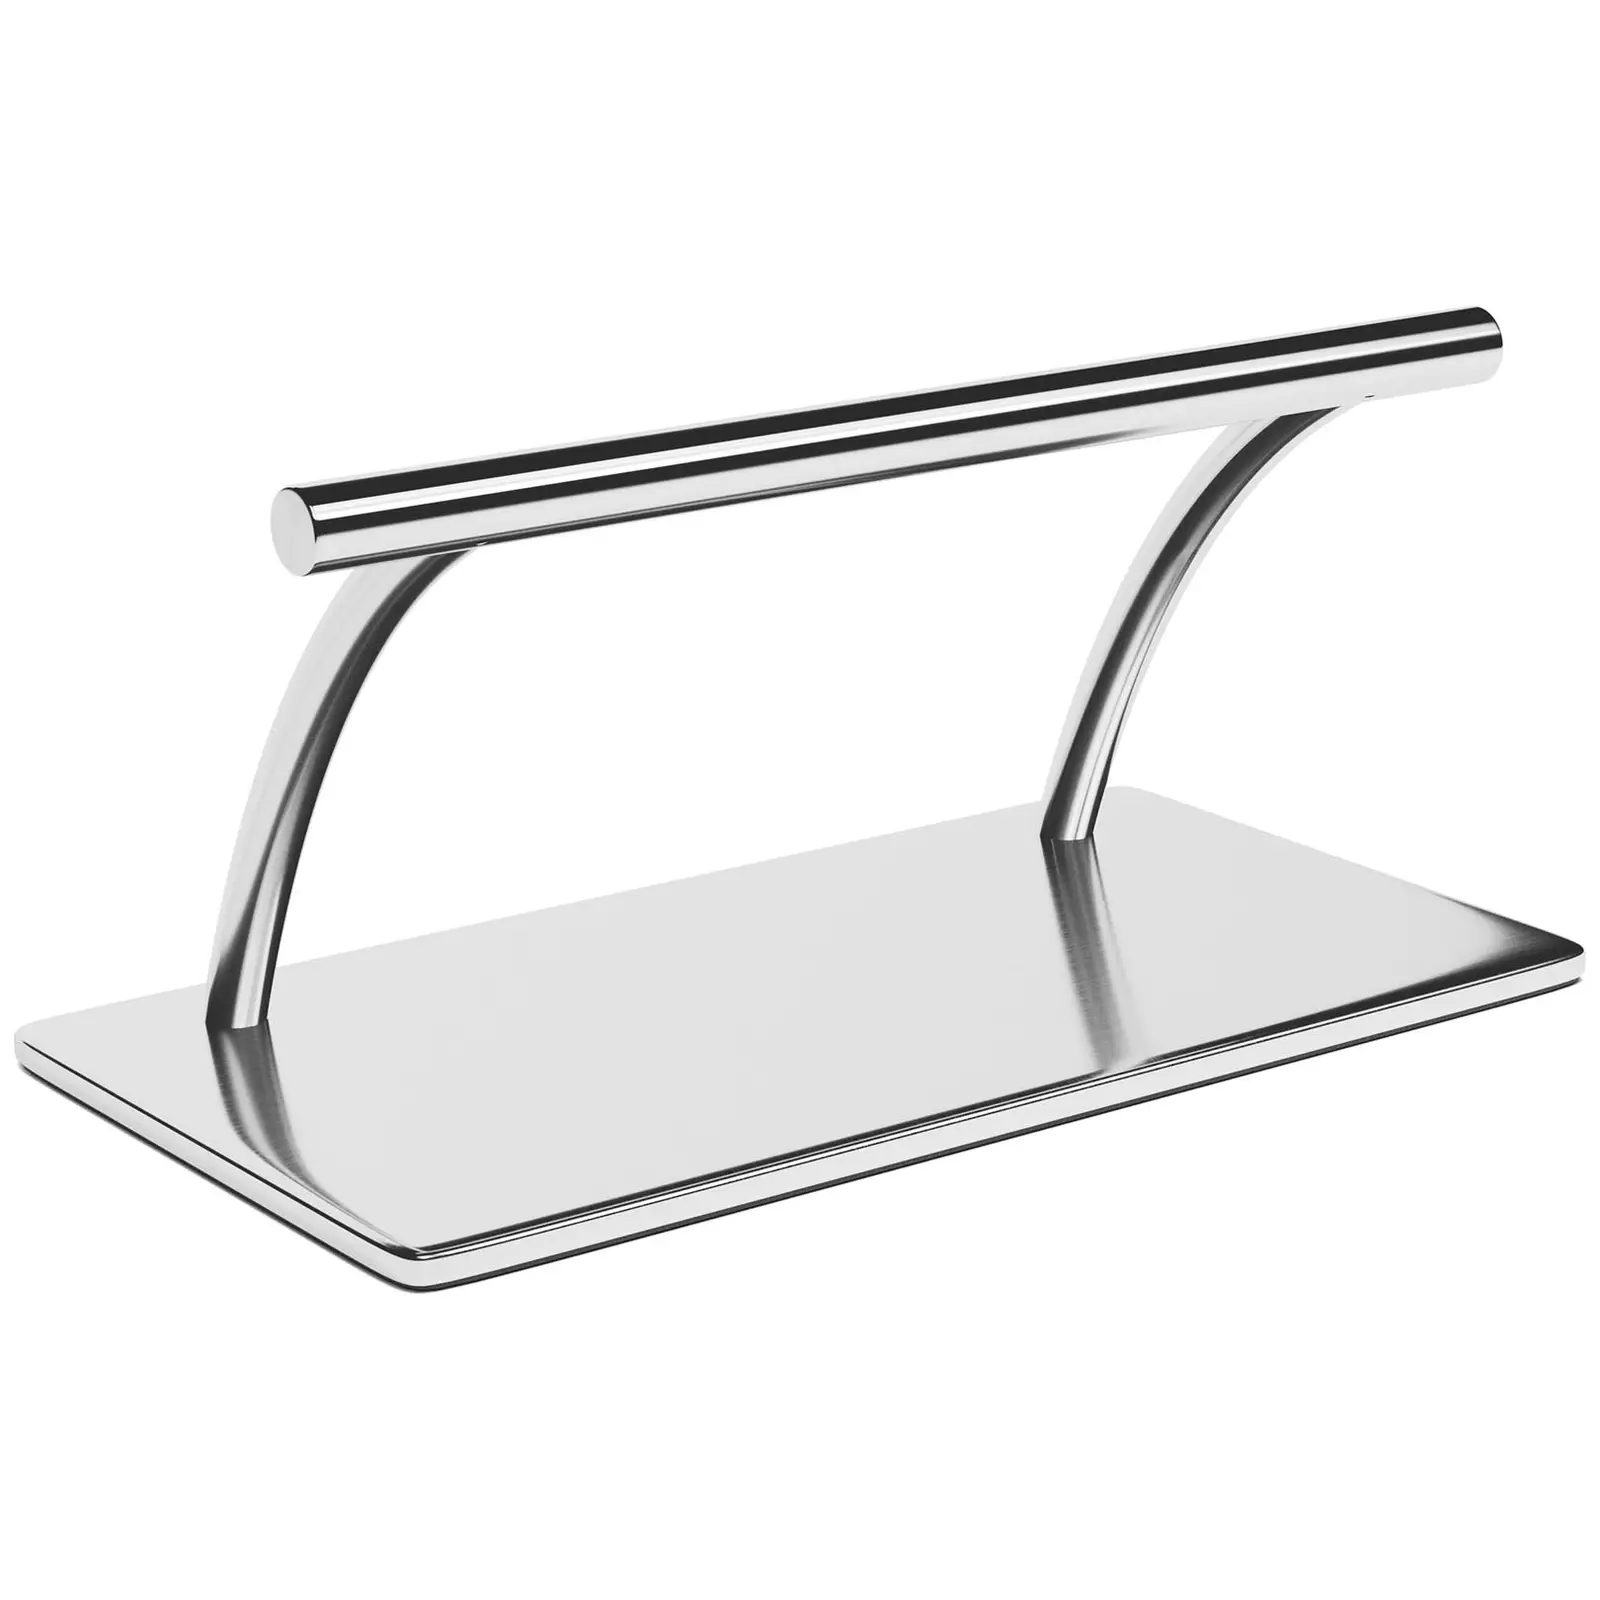 Salon Chair Footrest - stainless steel - 35 cm - round bar